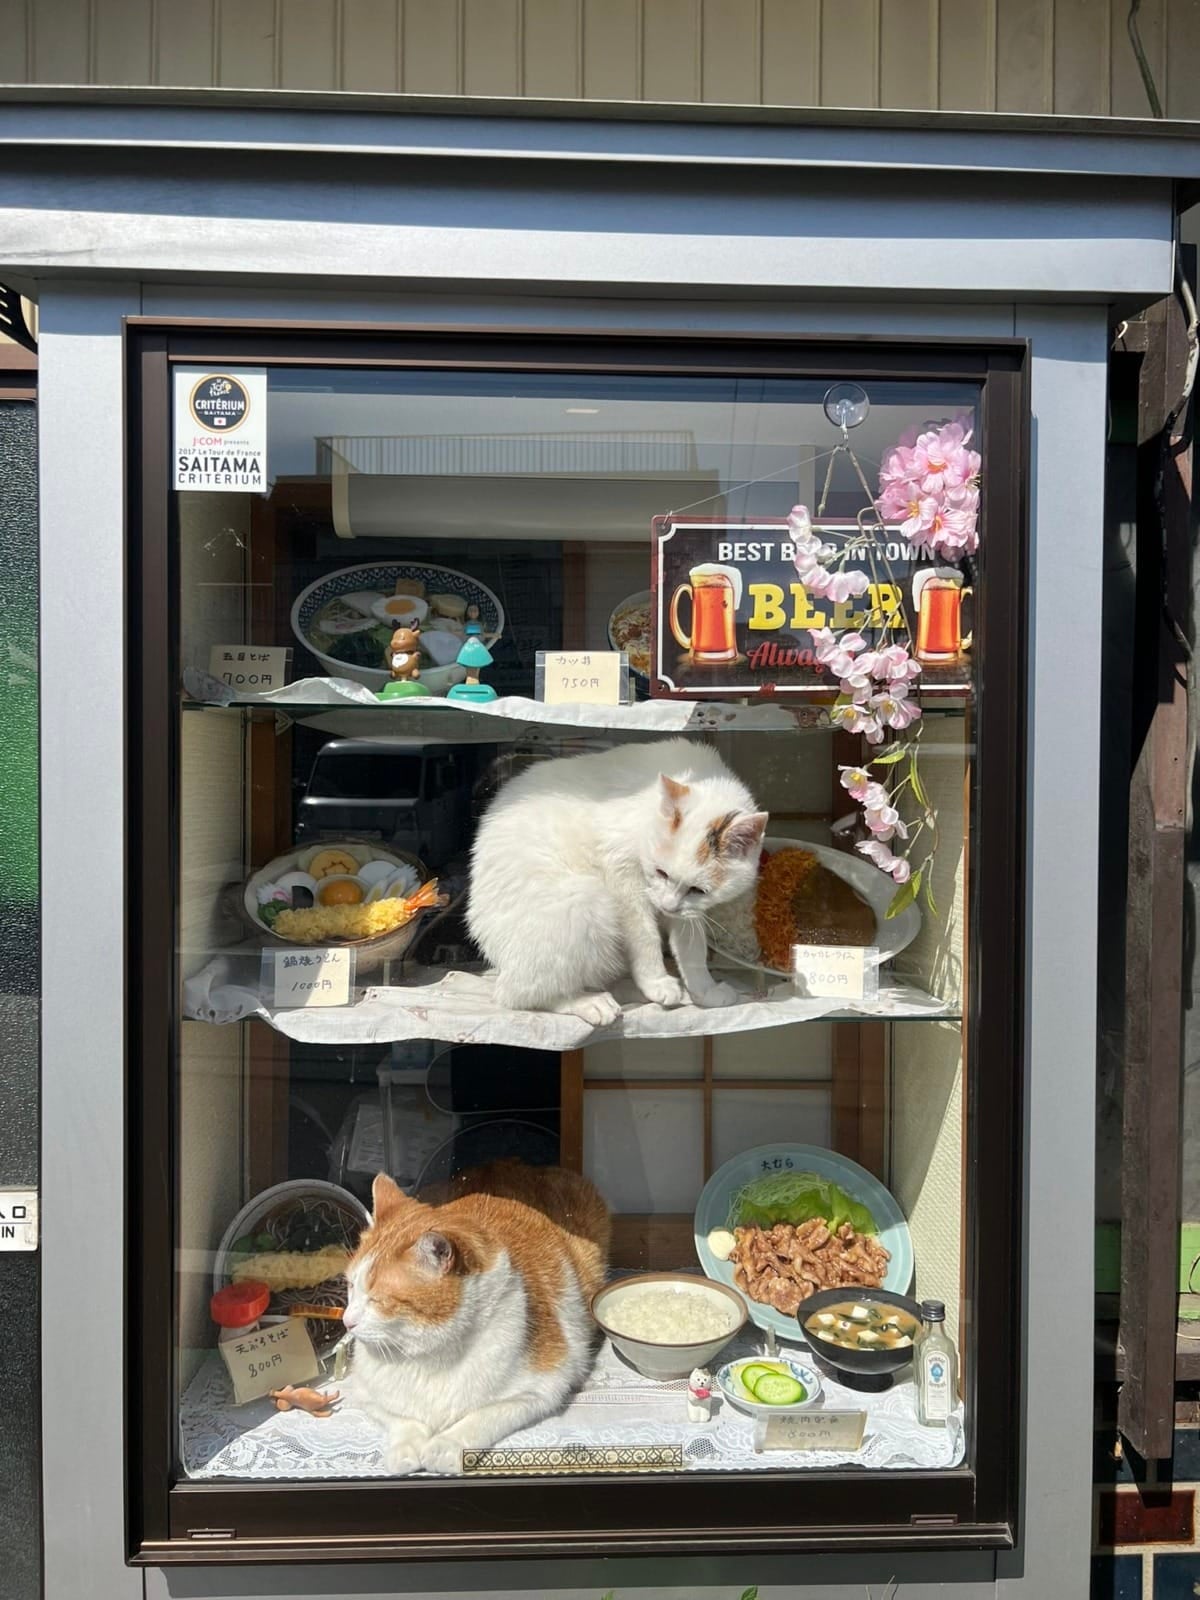 แมวกวัก ร้านโซบะญี่ปุ่น